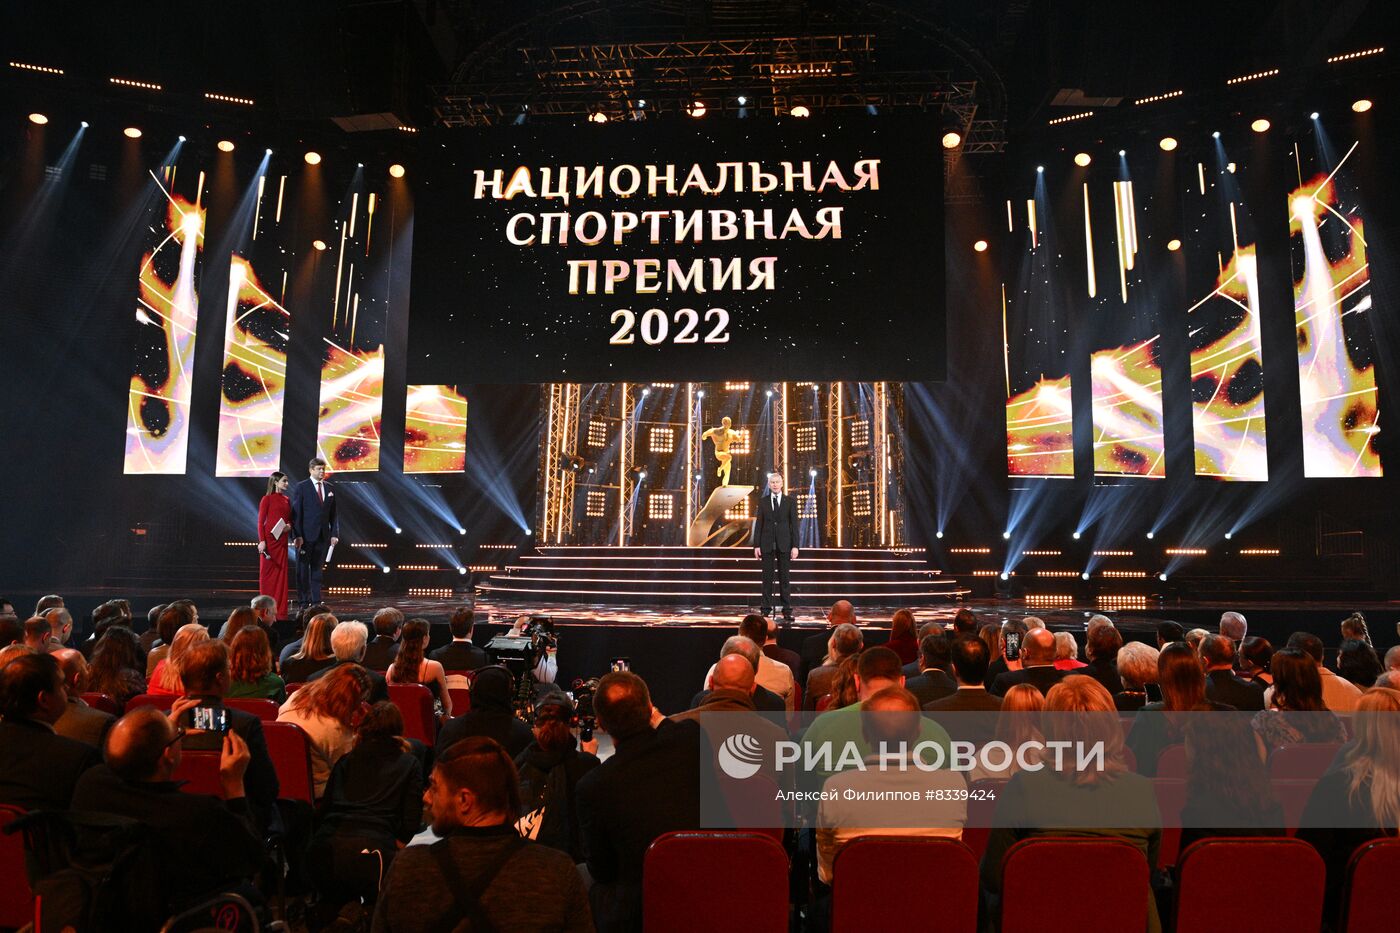 Церемония награждения лауреатов Национальной спортивной премии - 2022